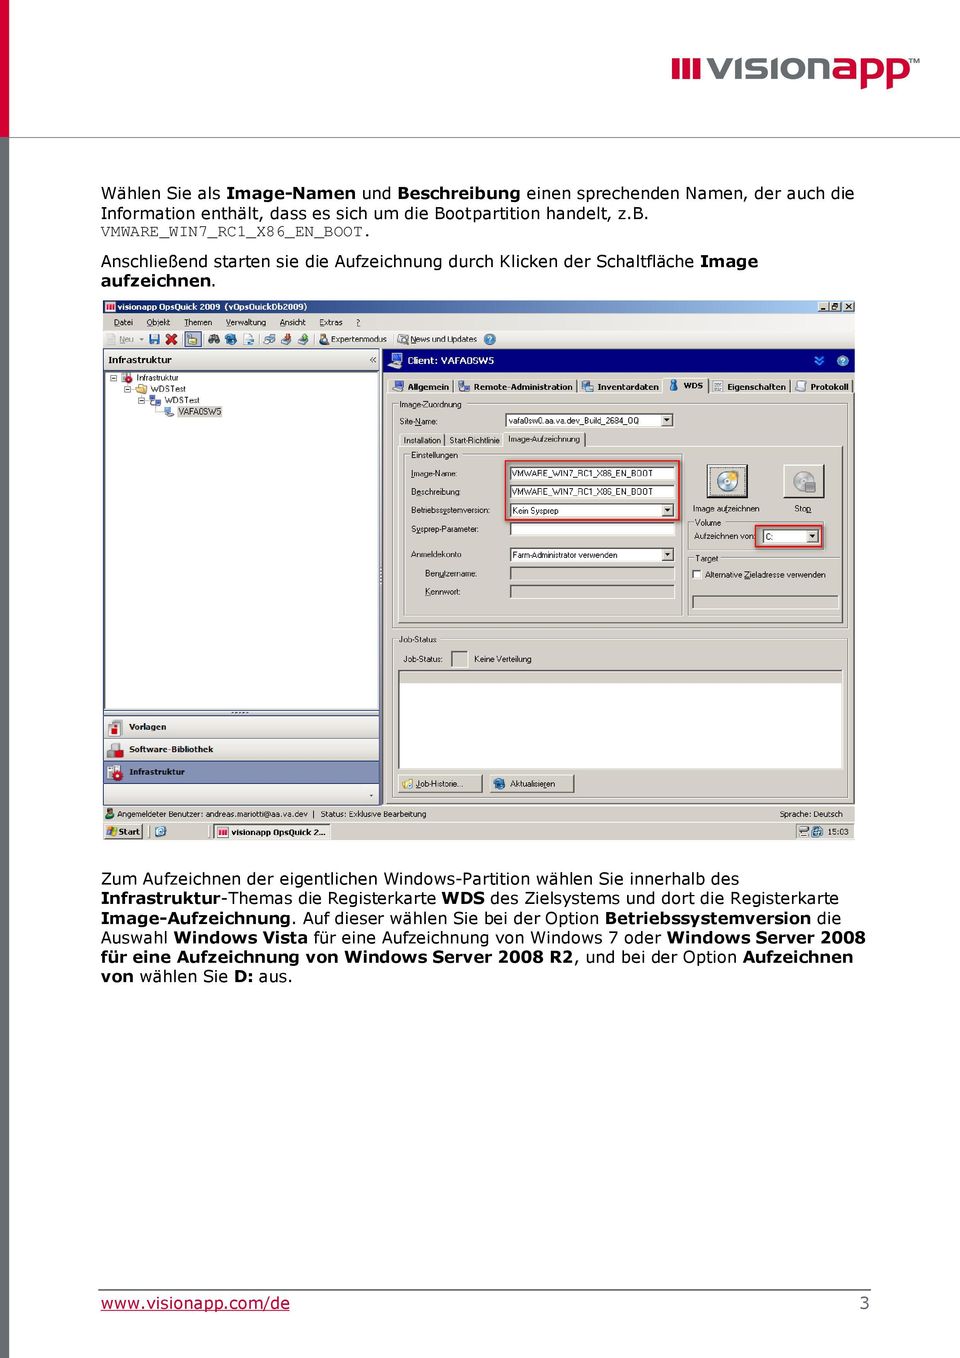 Zum Aufzeichnen der eigentlichen Windows-Partition wählen Sie innerhalb des Infrastruktur-Themas die Registerkarte WDS des Zielsystems und dort die Registerkarte Image-Aufzeichnung.